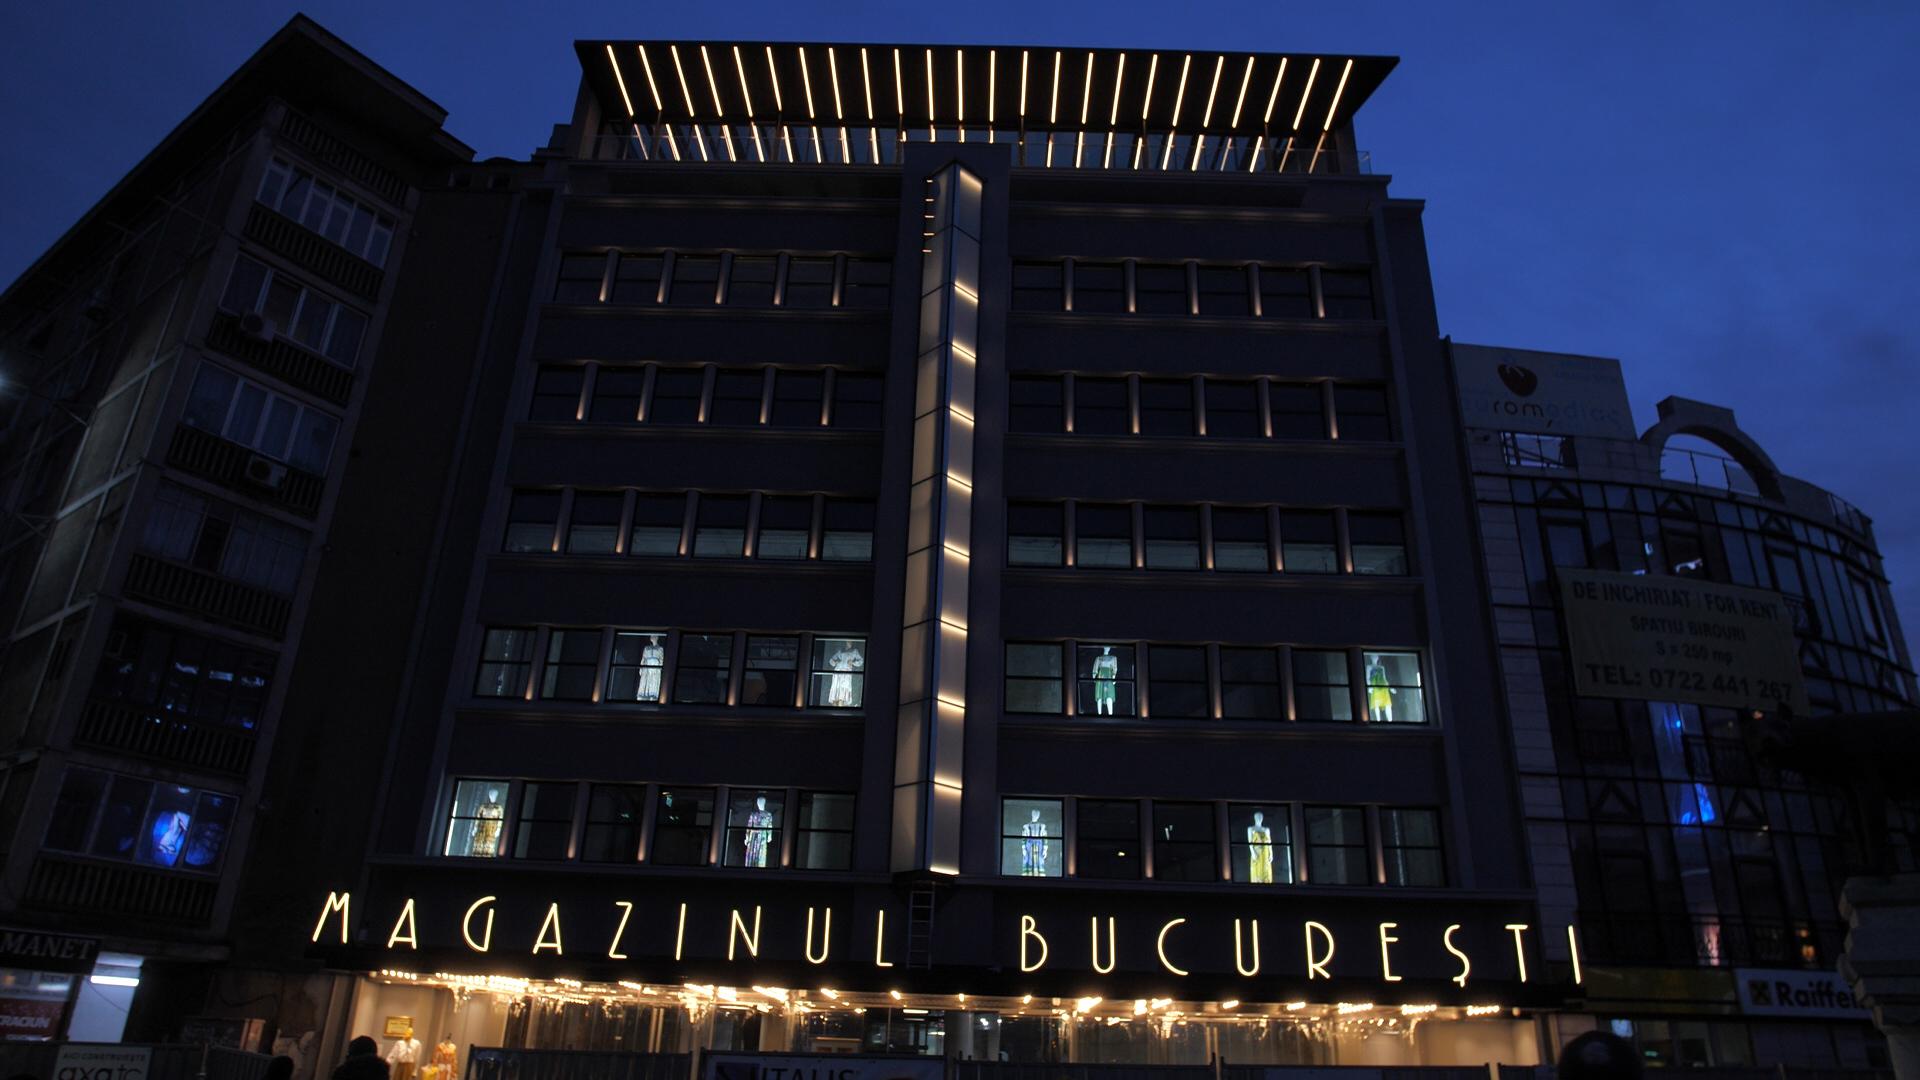 Magazinul Bucureşti, clădirea simbol din centrul istoric al Capitalei, este gata să reintre în circuitul comercial